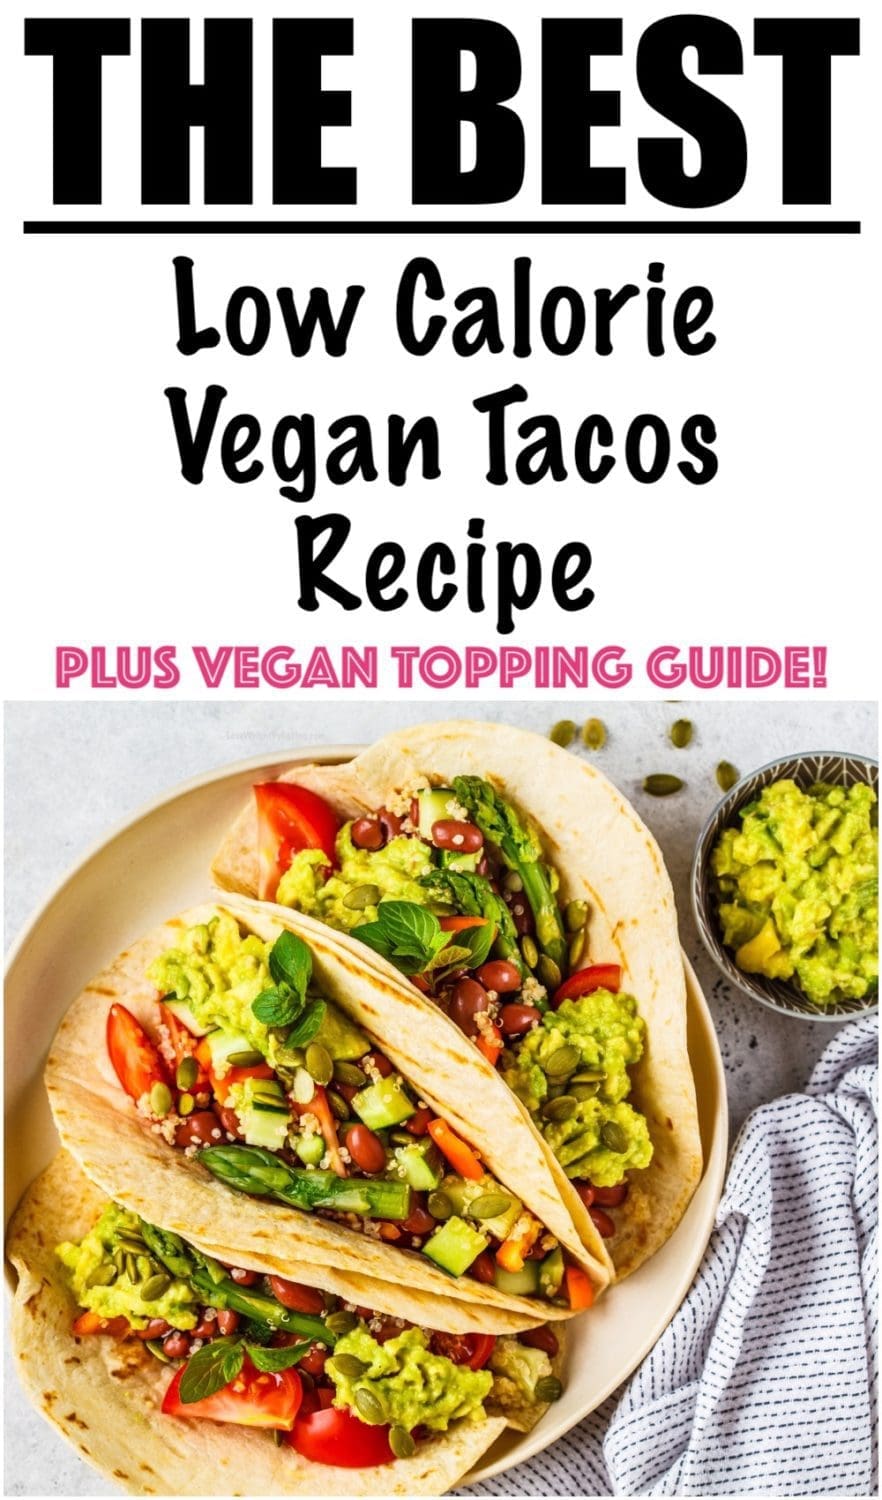 The Best Vegan Taco Recipe